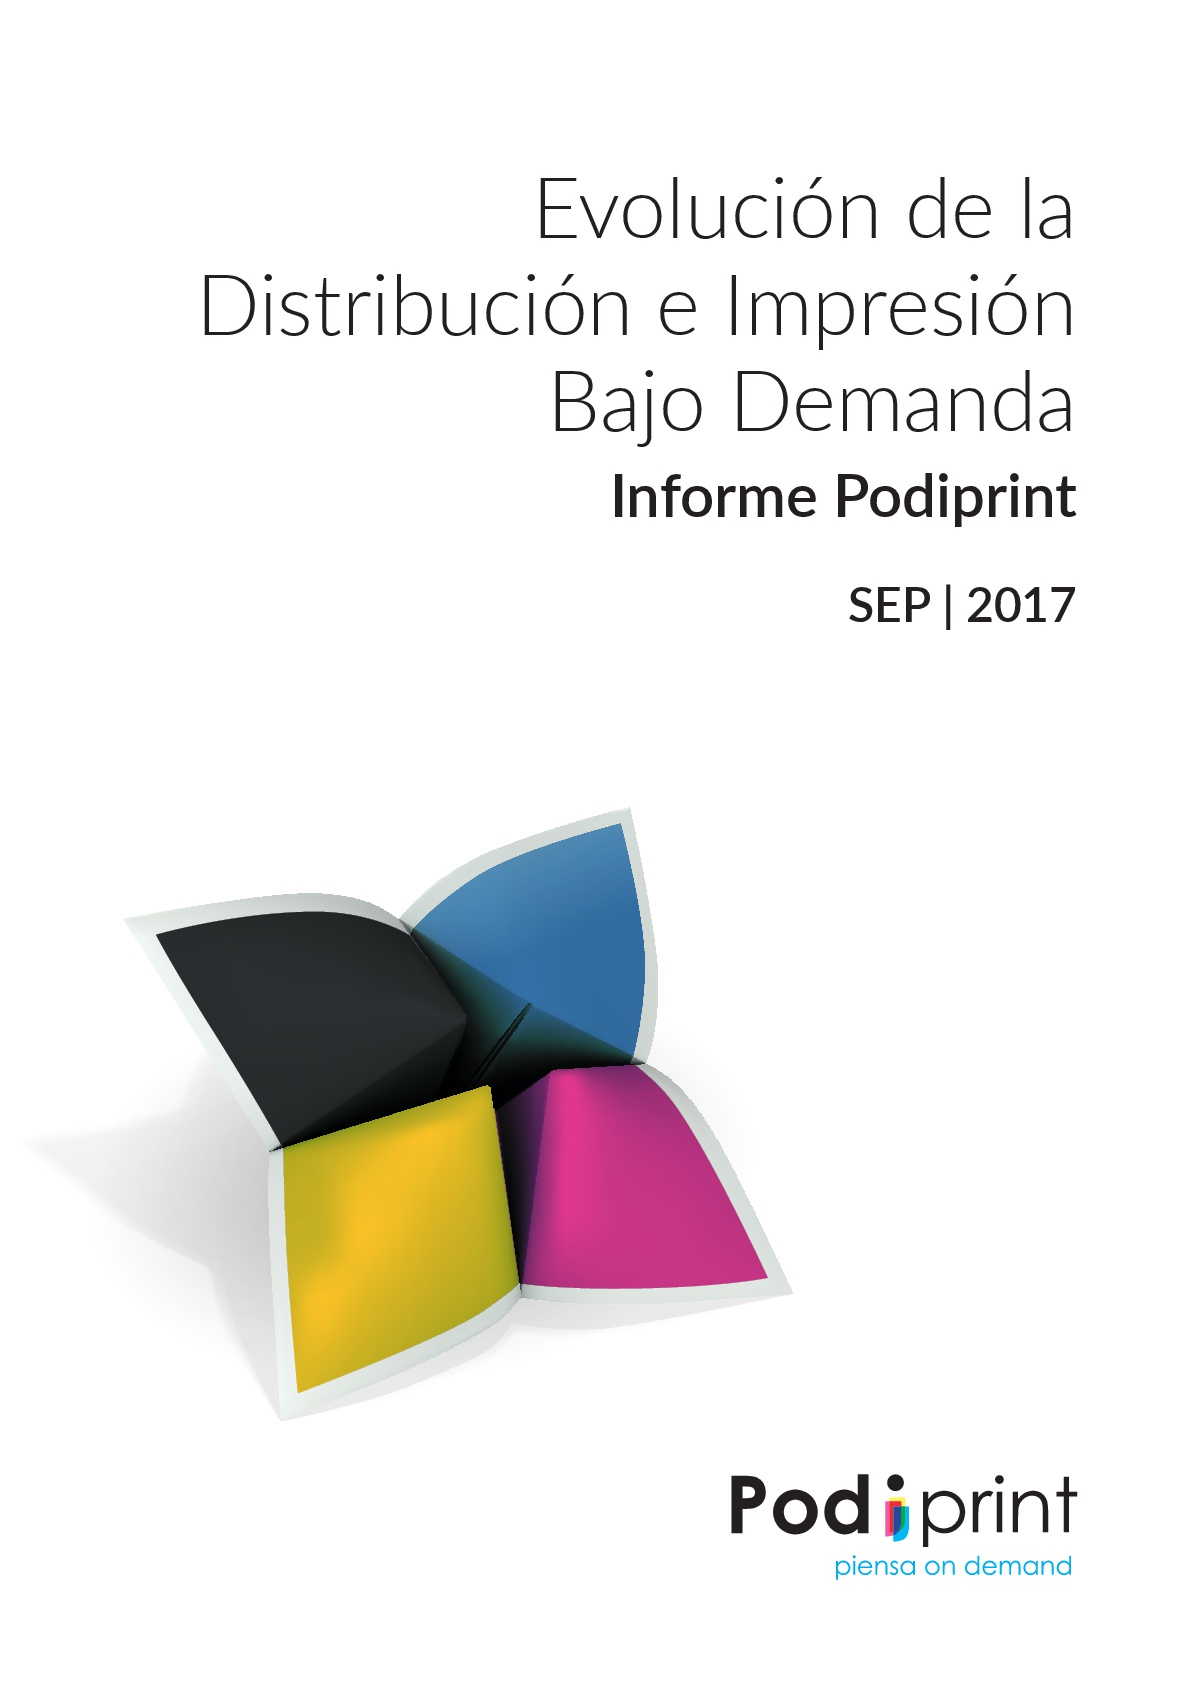 Evolución de la distribución e impresión bajo demanda. Informe Podiprint